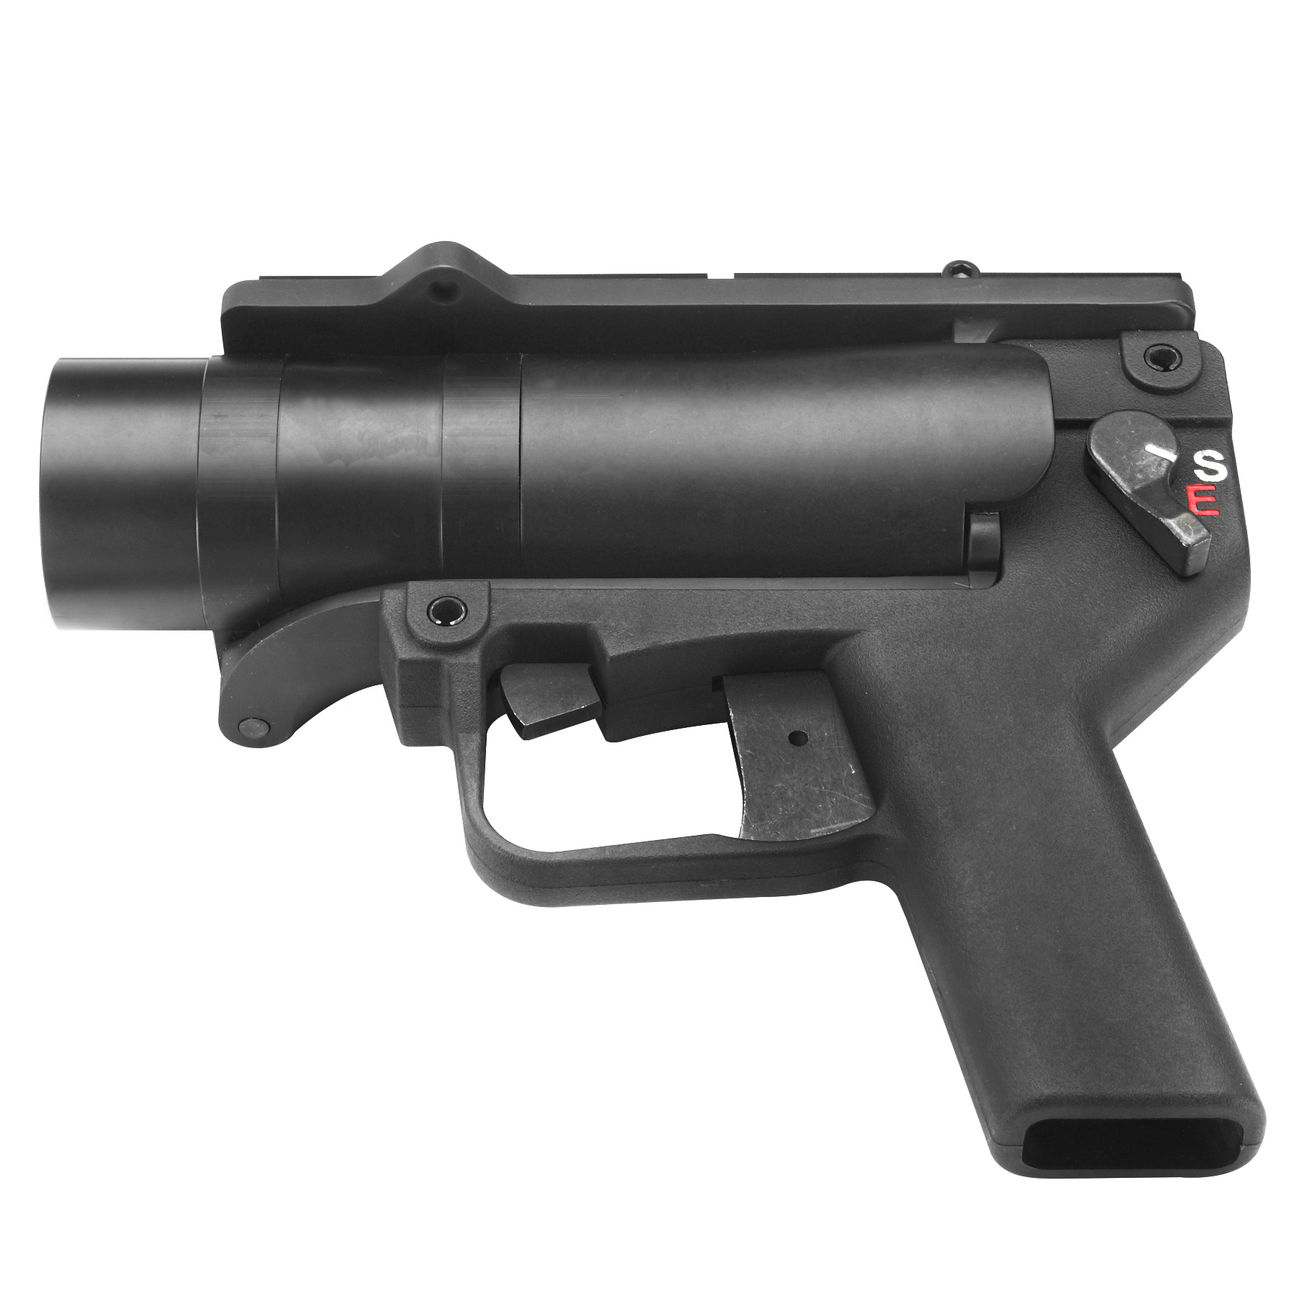 Mad Bull AGX 40mm Vollmetall Airsoft Pistolen-Launcher schwarz Bild 4